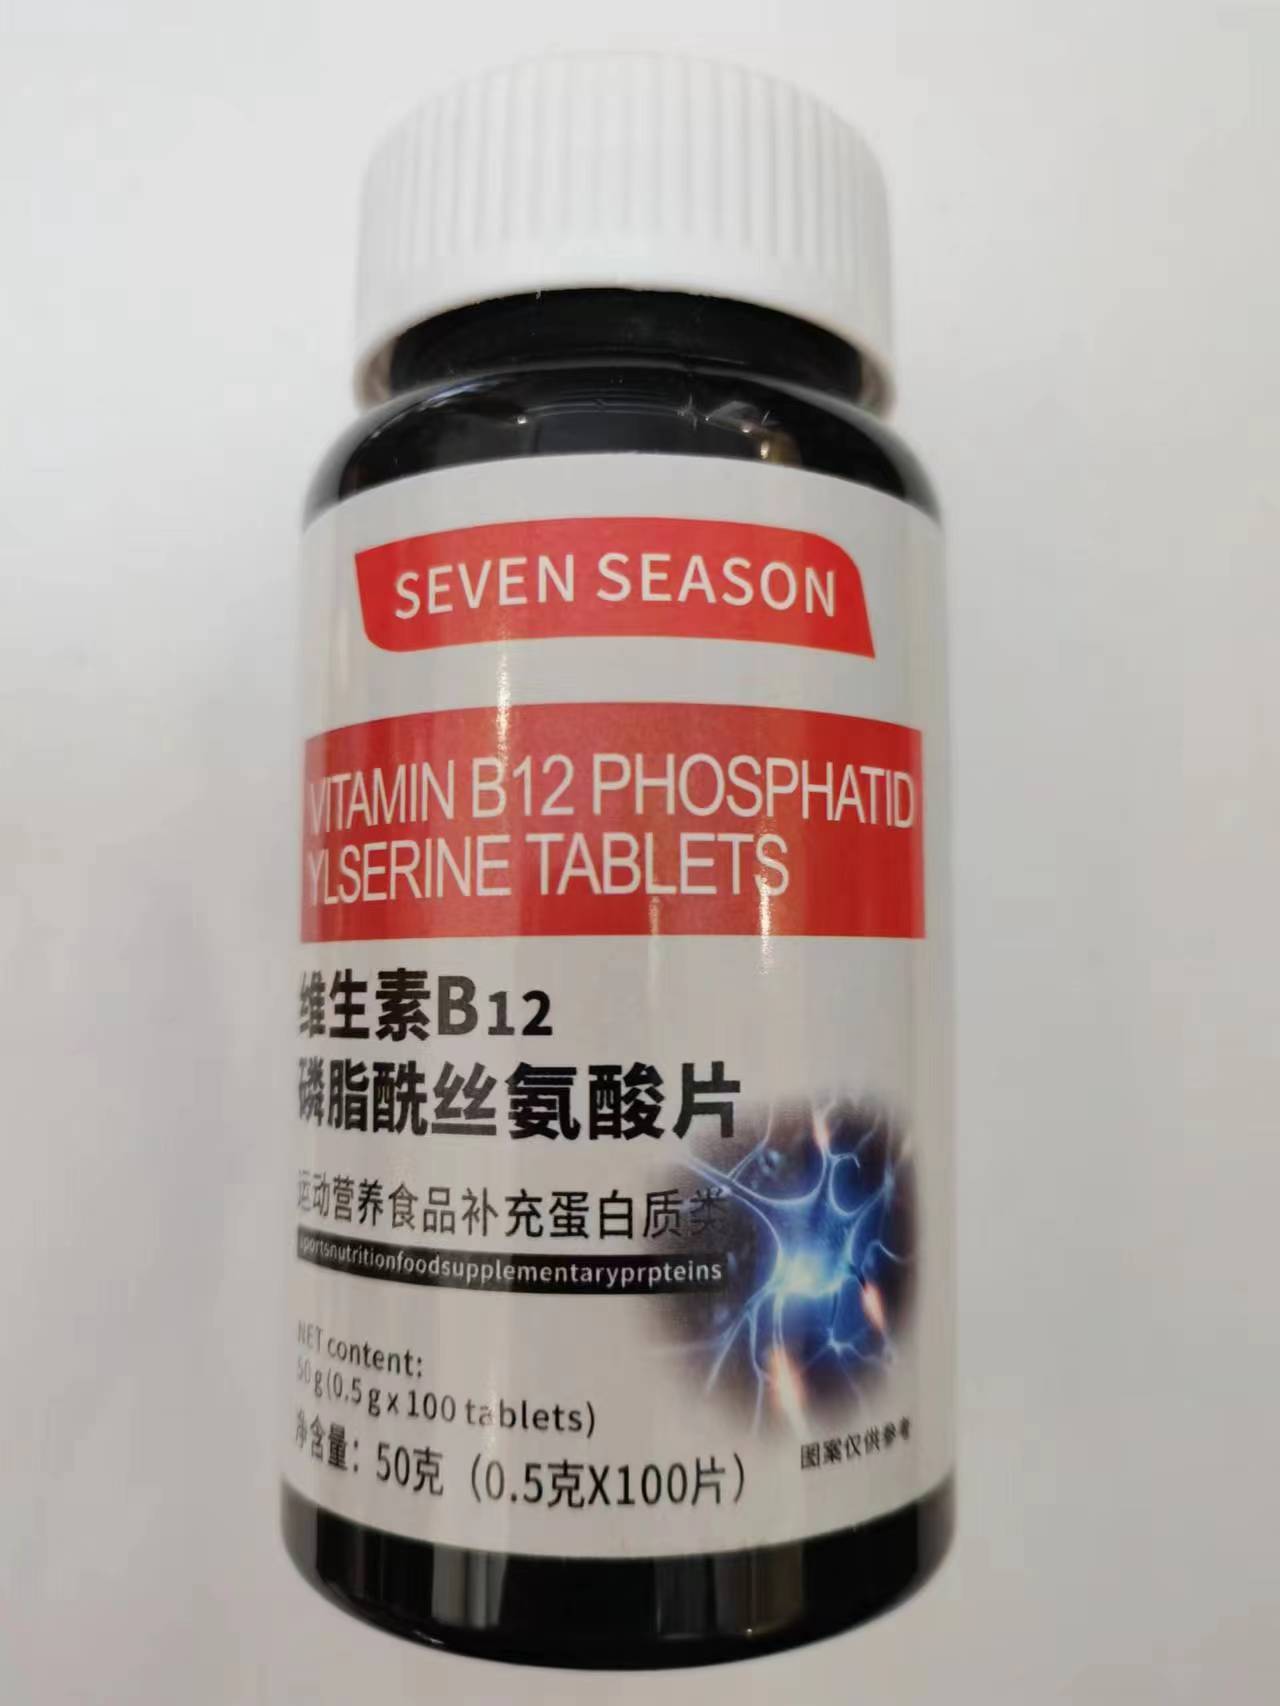 限量促销买1发2瓶SEVENSEASON维生素B12磷脂酰丝氨酸片